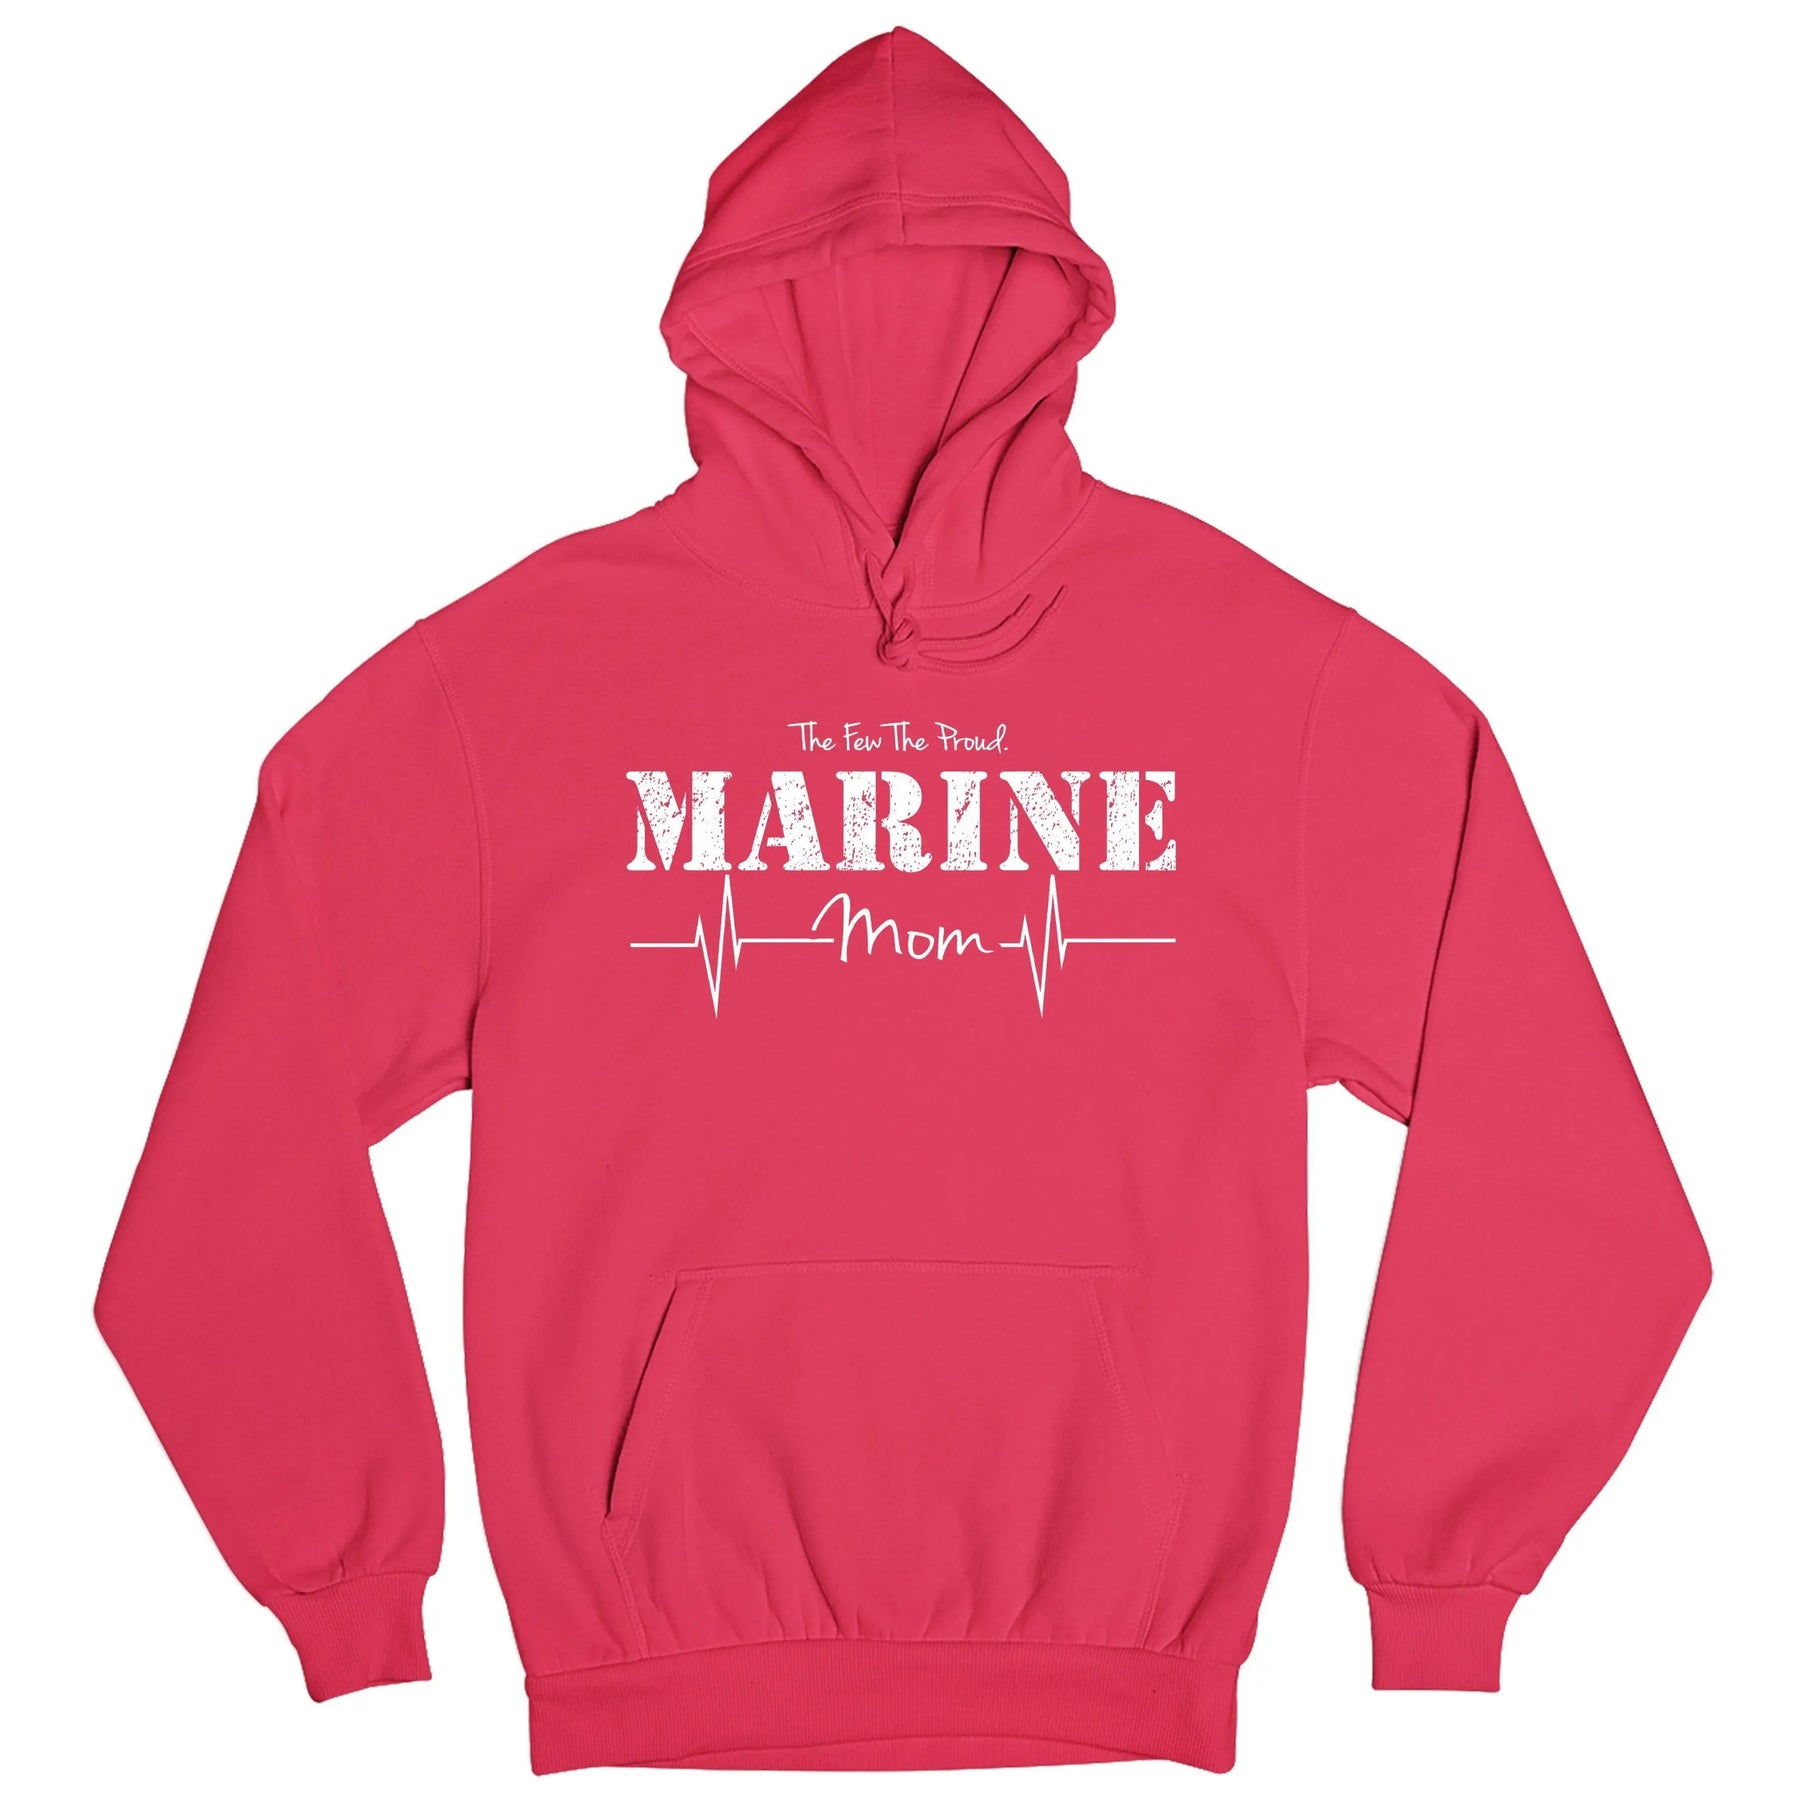 Marine Mom Women's Hoodie - Marine Corps Direct